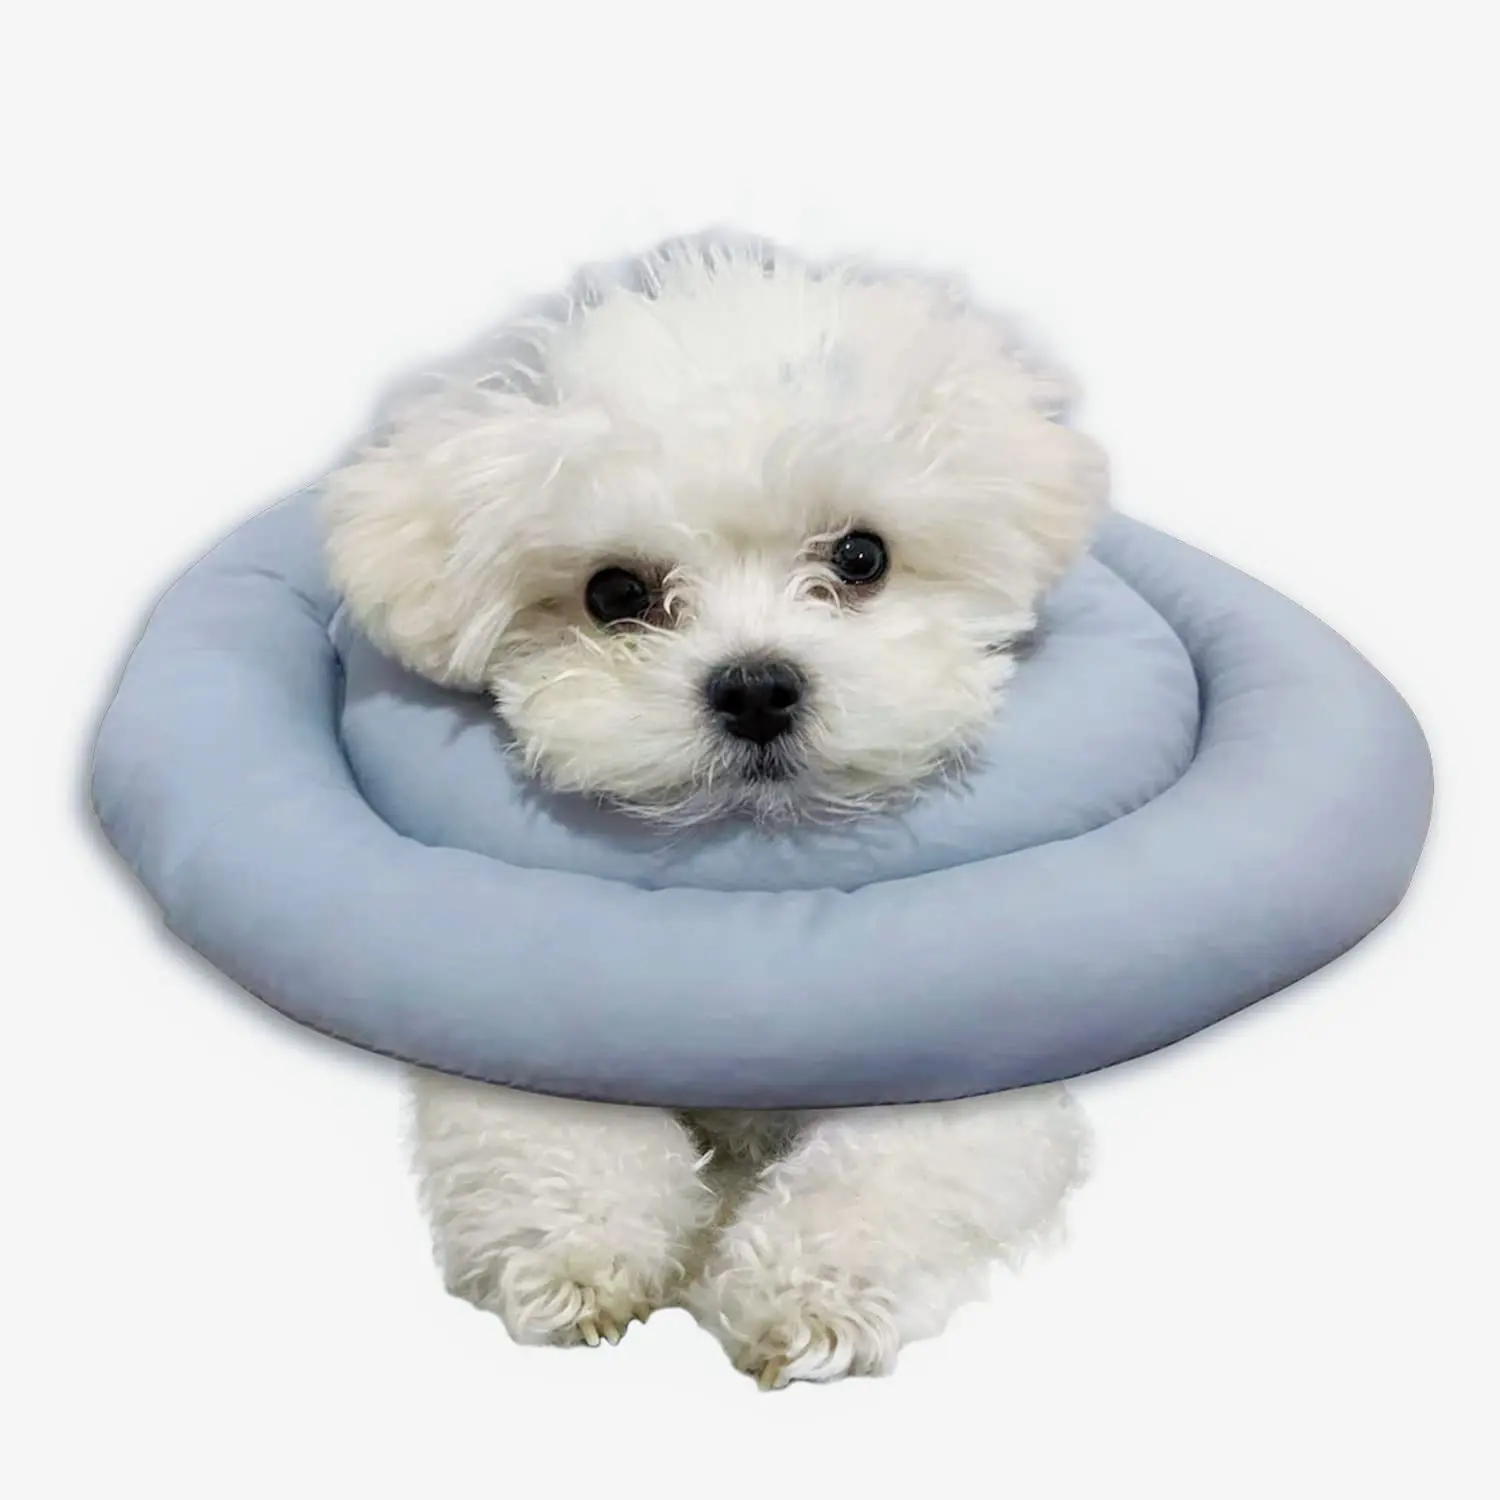 Collar inflable suave Collar cónico protector ajustable después de la cirugía CINTAS Perros y gatos blancos Collar de recuperación suave para mascotas